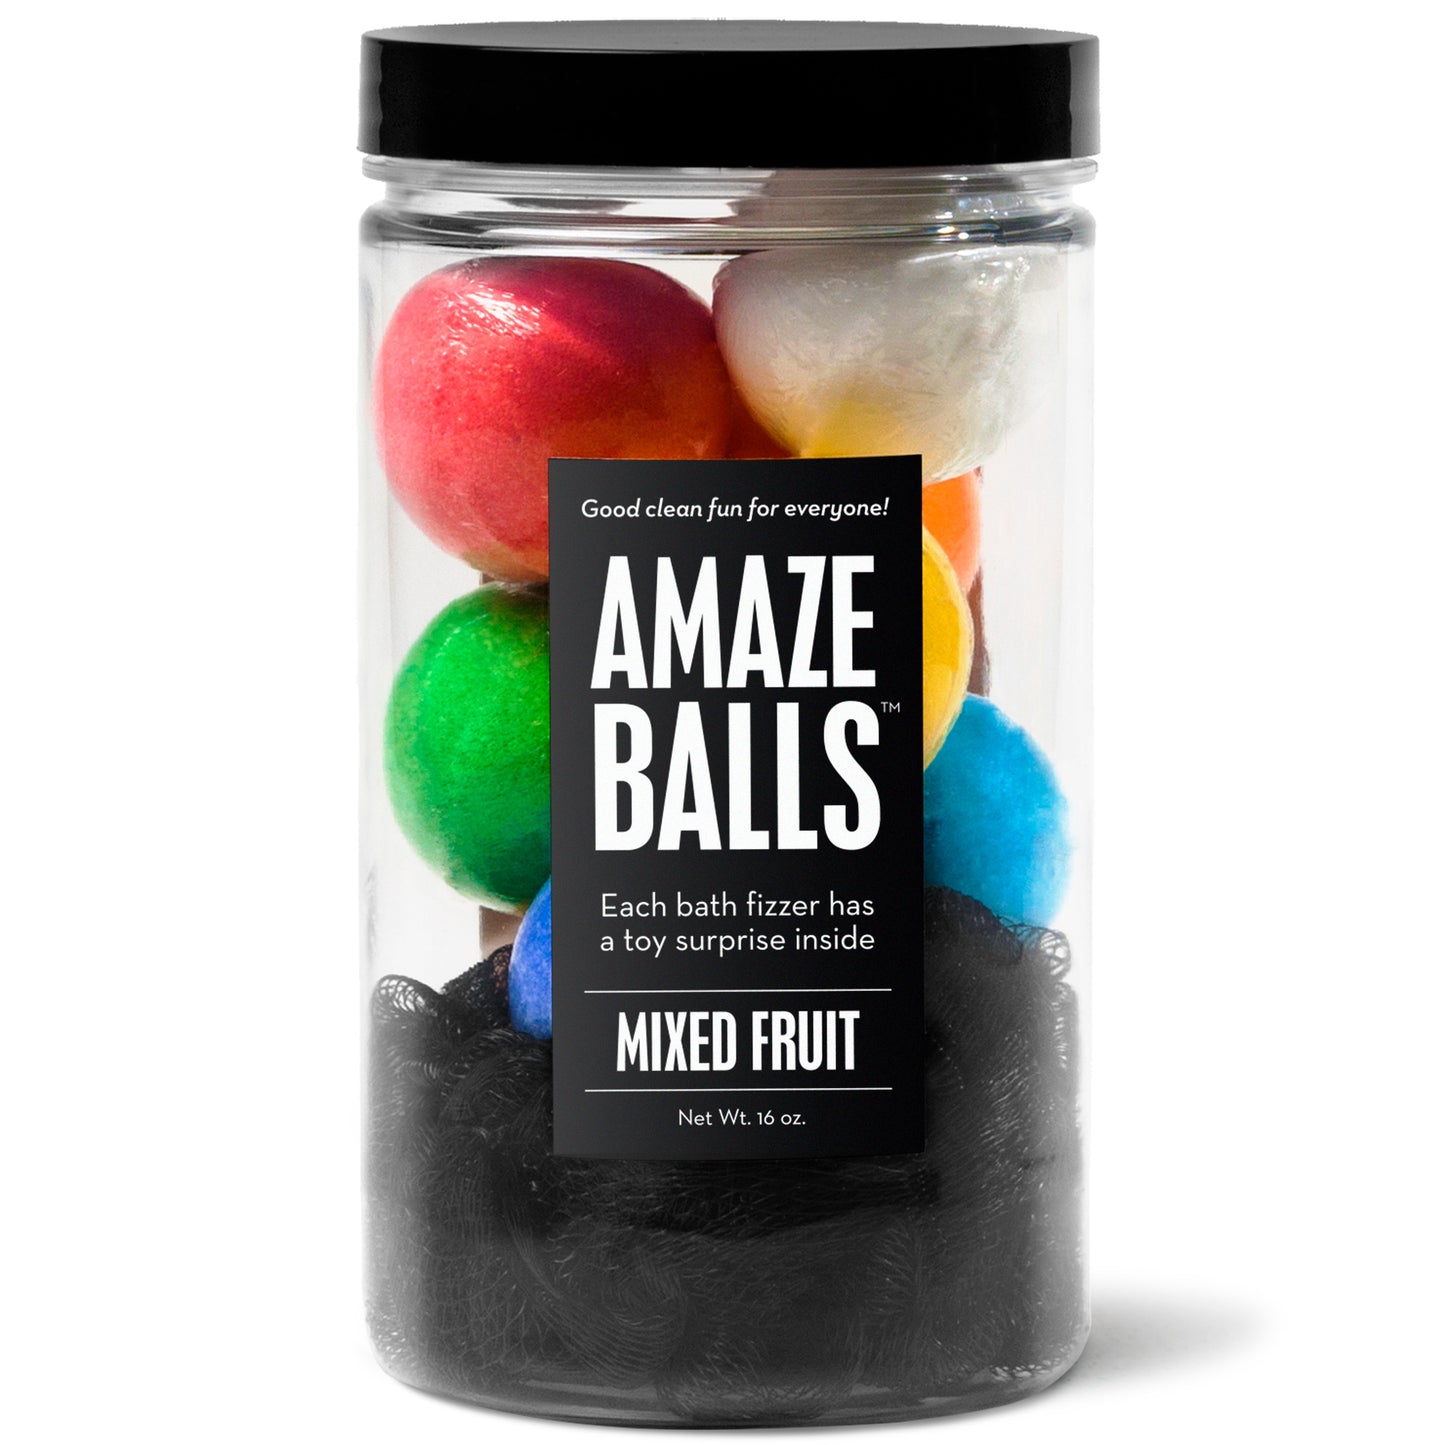 Amazeballs Jar